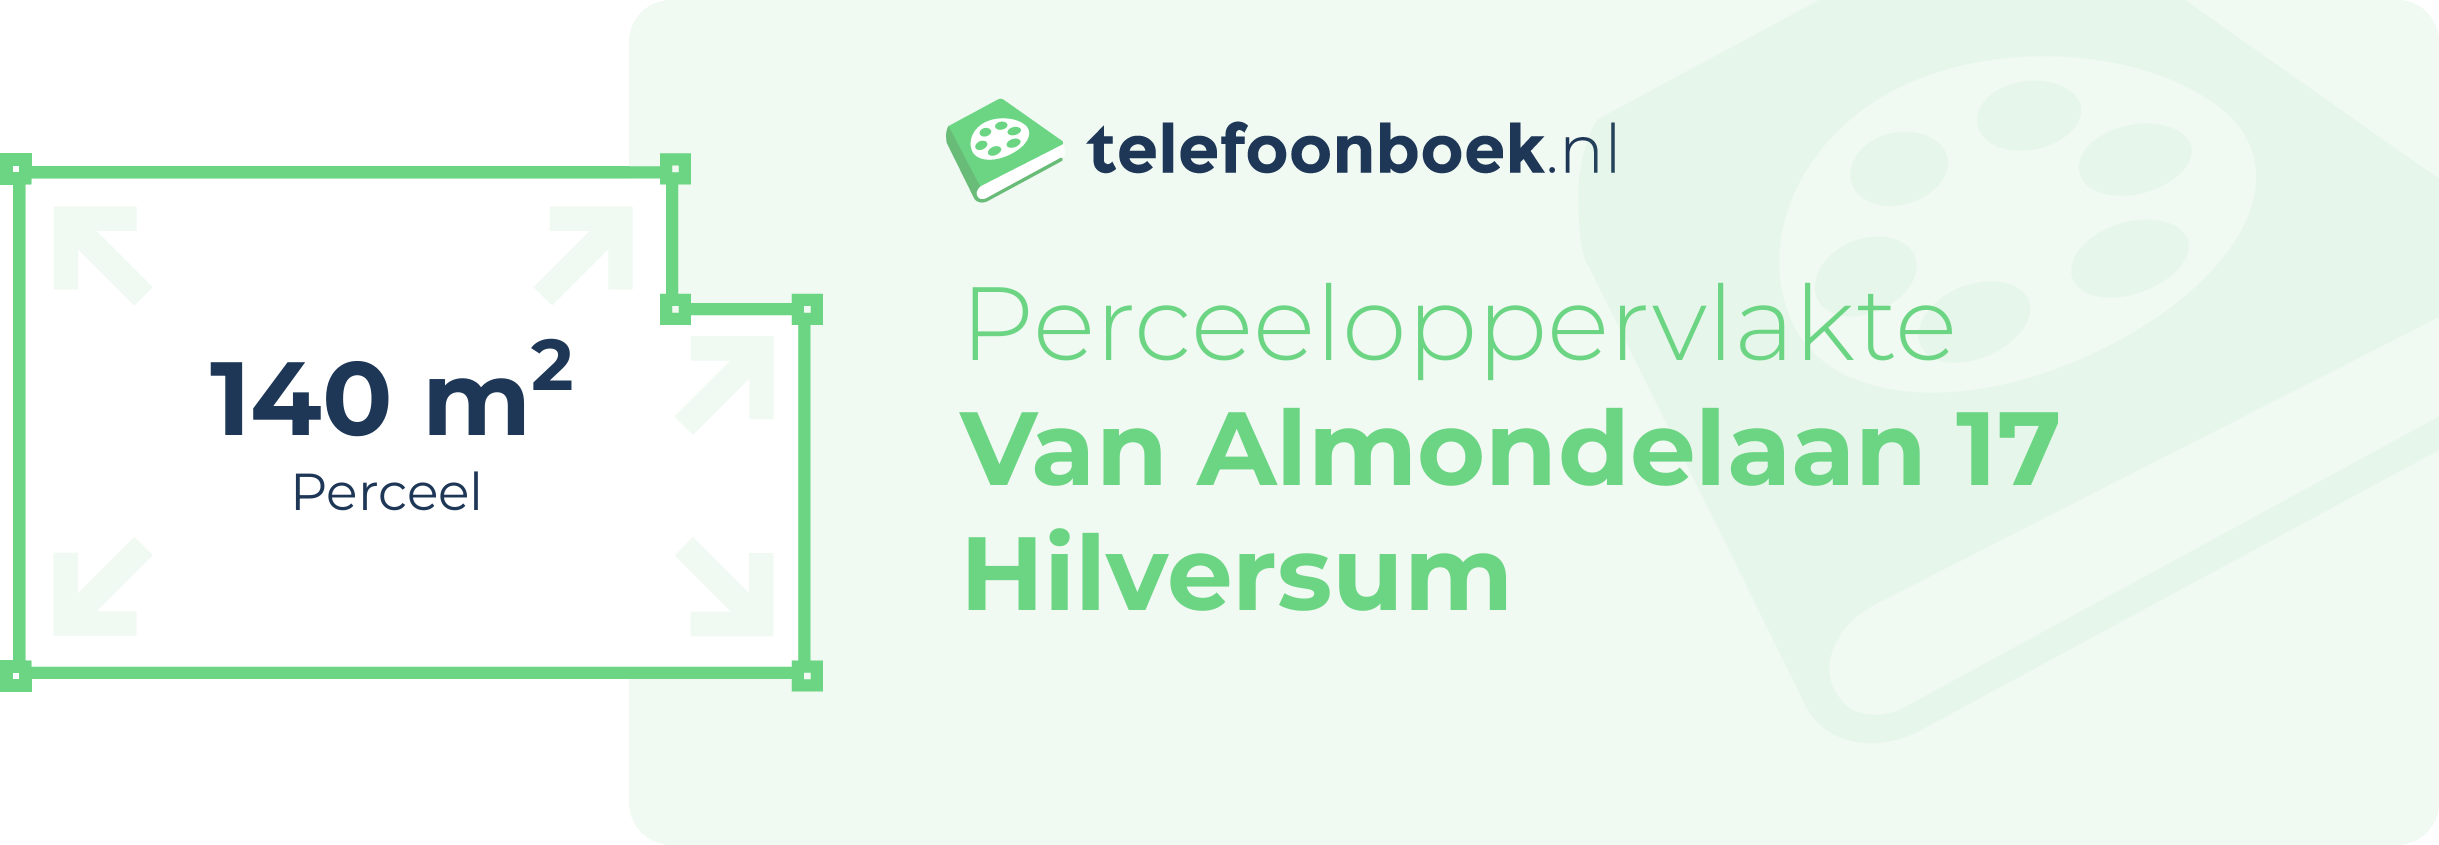 Perceeloppervlakte Van Almondelaan 17 Hilversum